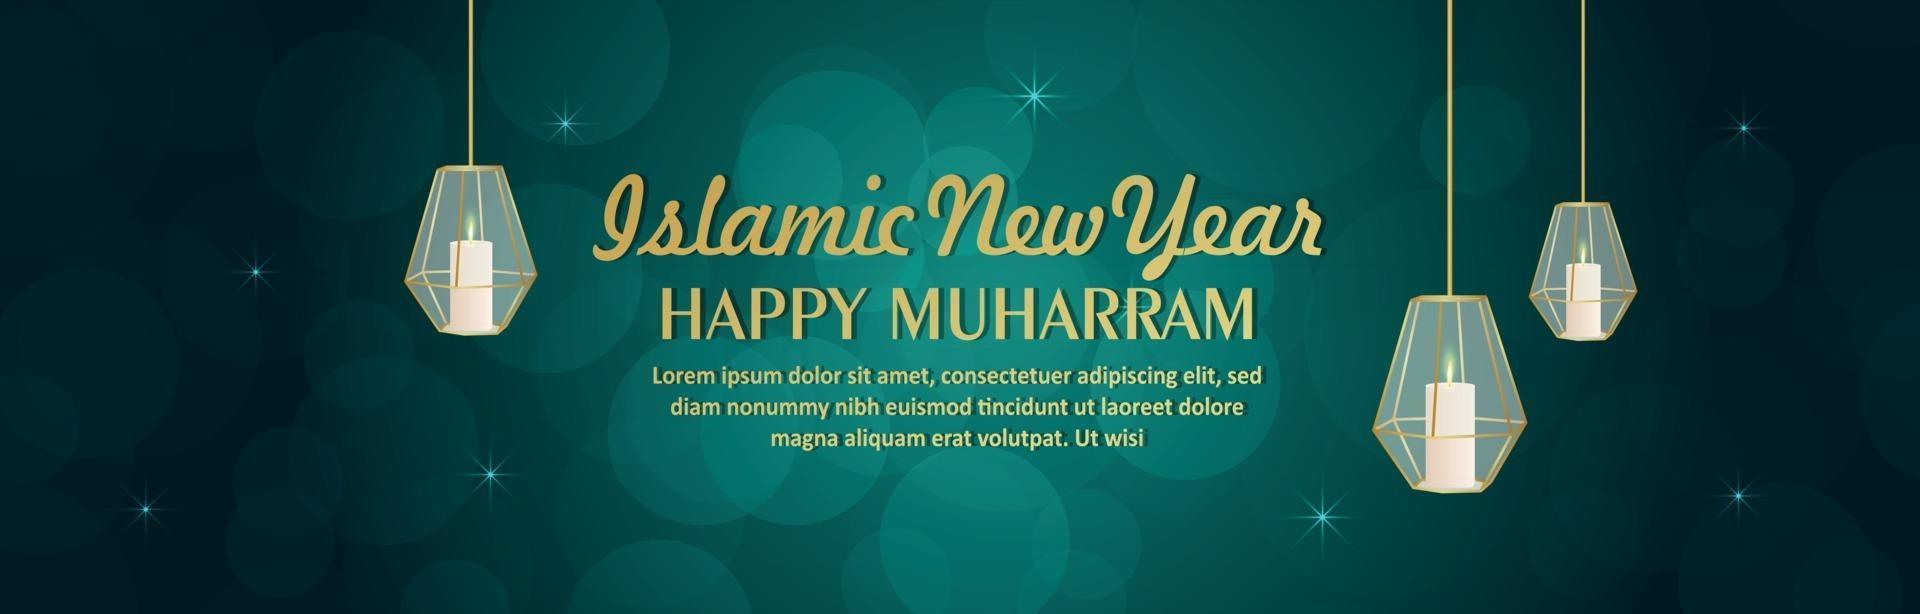 lyckligt muharram islamiskt nytt år vektorillustration vektor